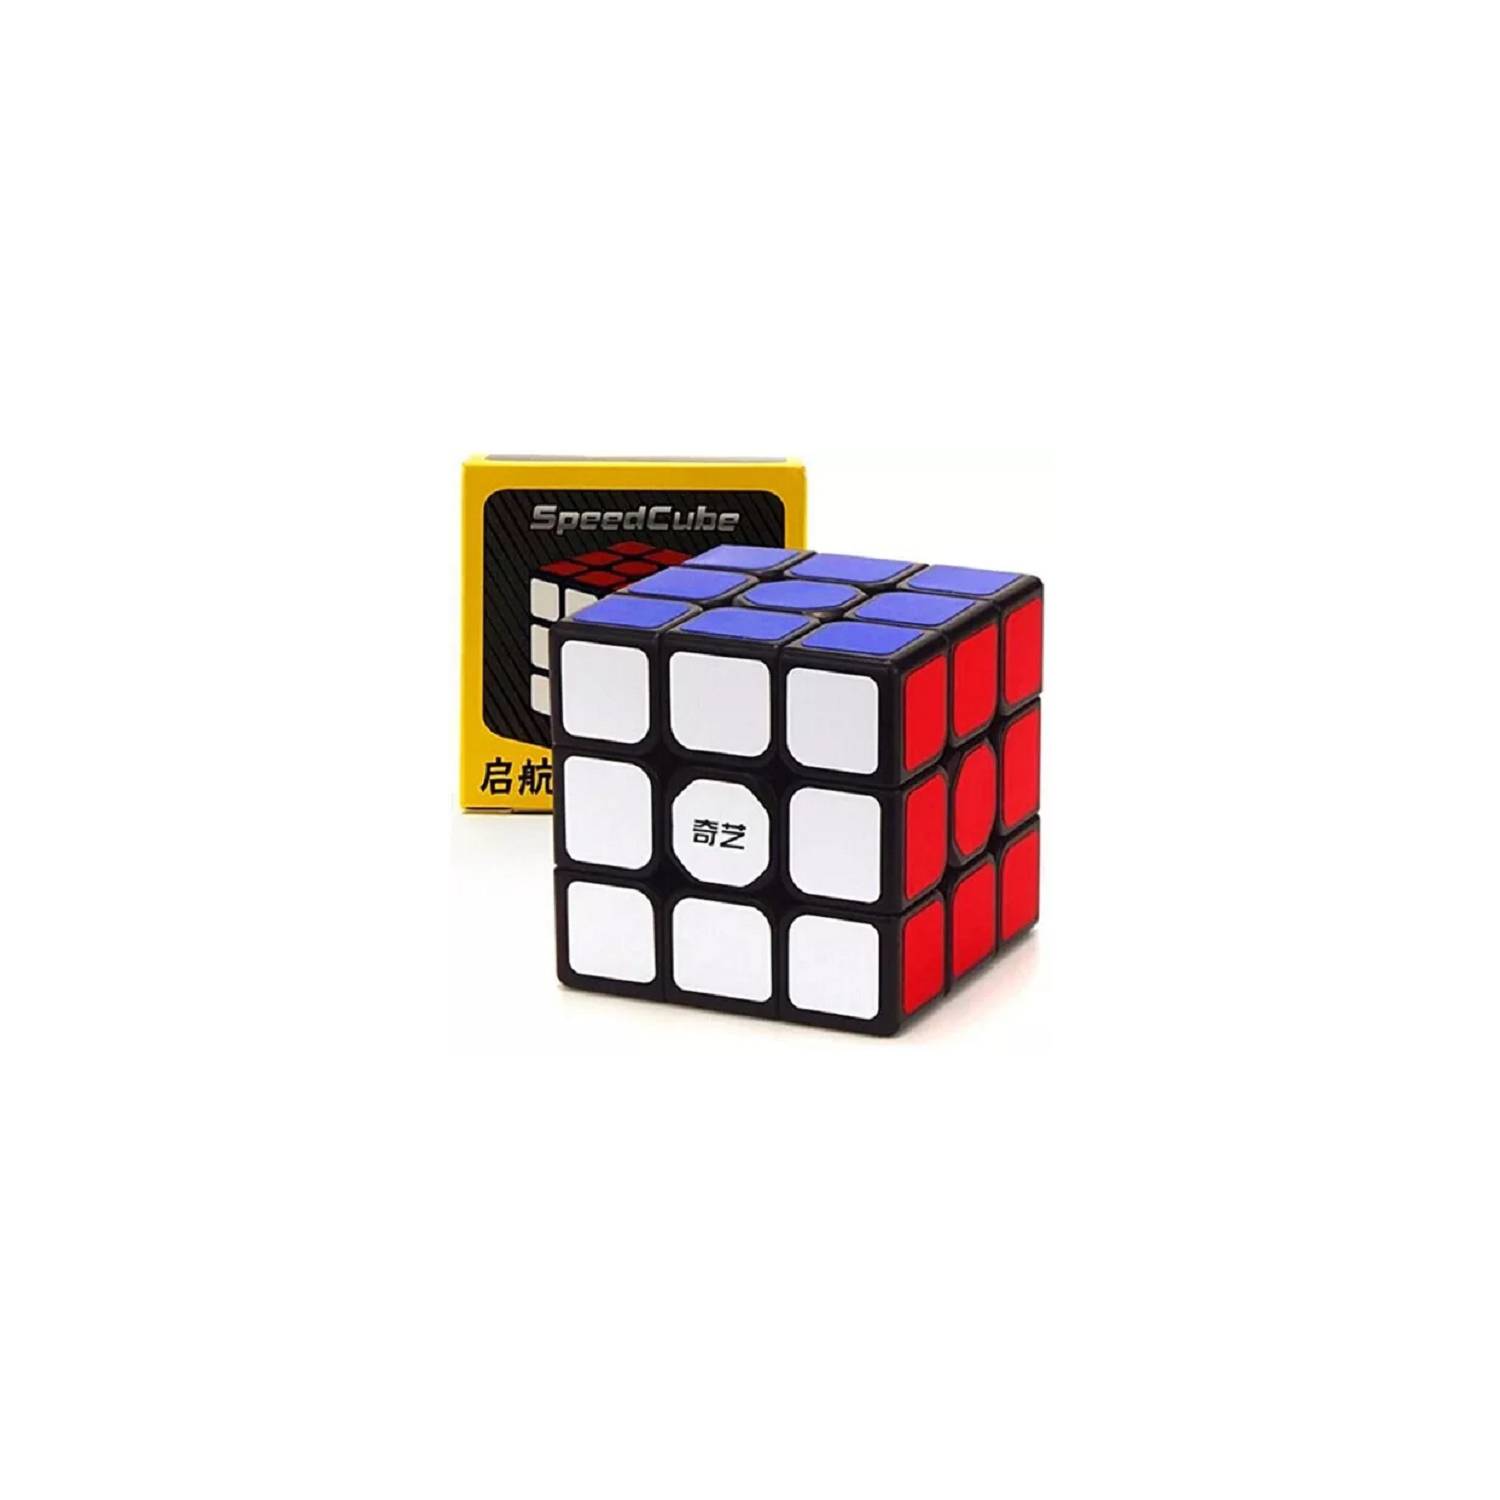  YuanBao JLLidcy - Cubo plegable rectangular plegable